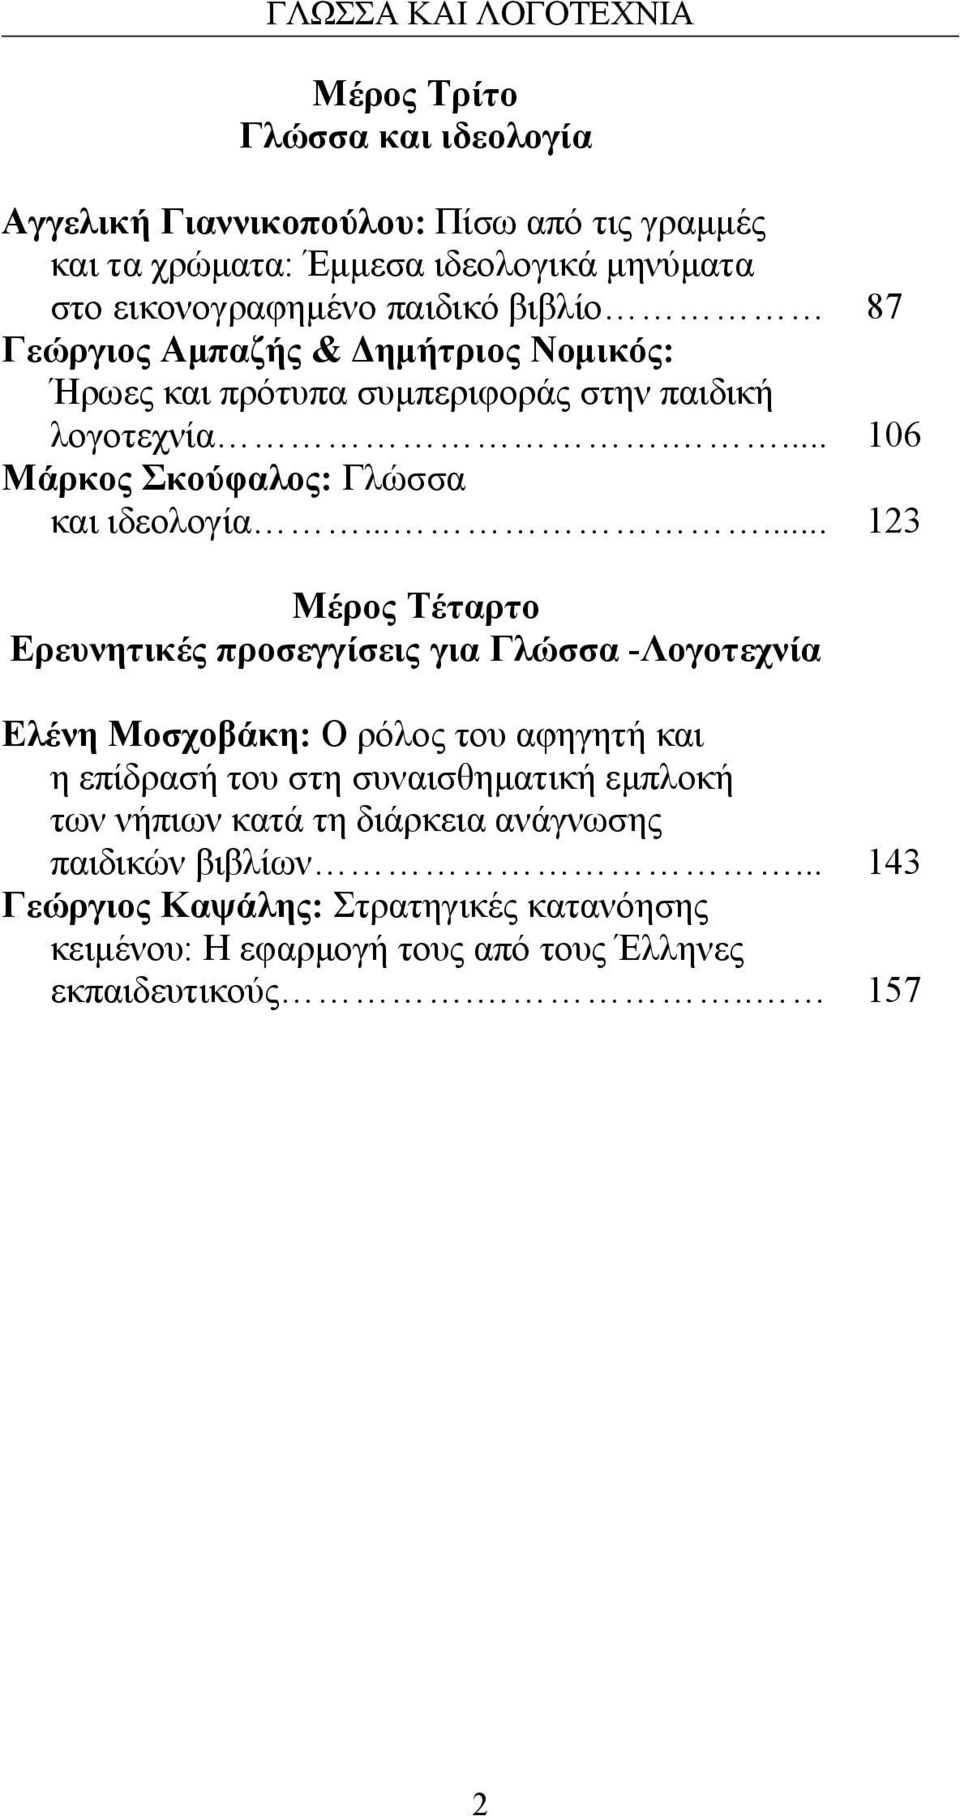 ..... 87 106 123 Μέρος Τέταρτο Ερευνητικές προσεγγίσεις για Γλώσσα -Λογοτεχνία Ελένη Μοσχοβάκη: Ο ρόλος του αφηγητή και η επίδρασή του στη συναισθηματική